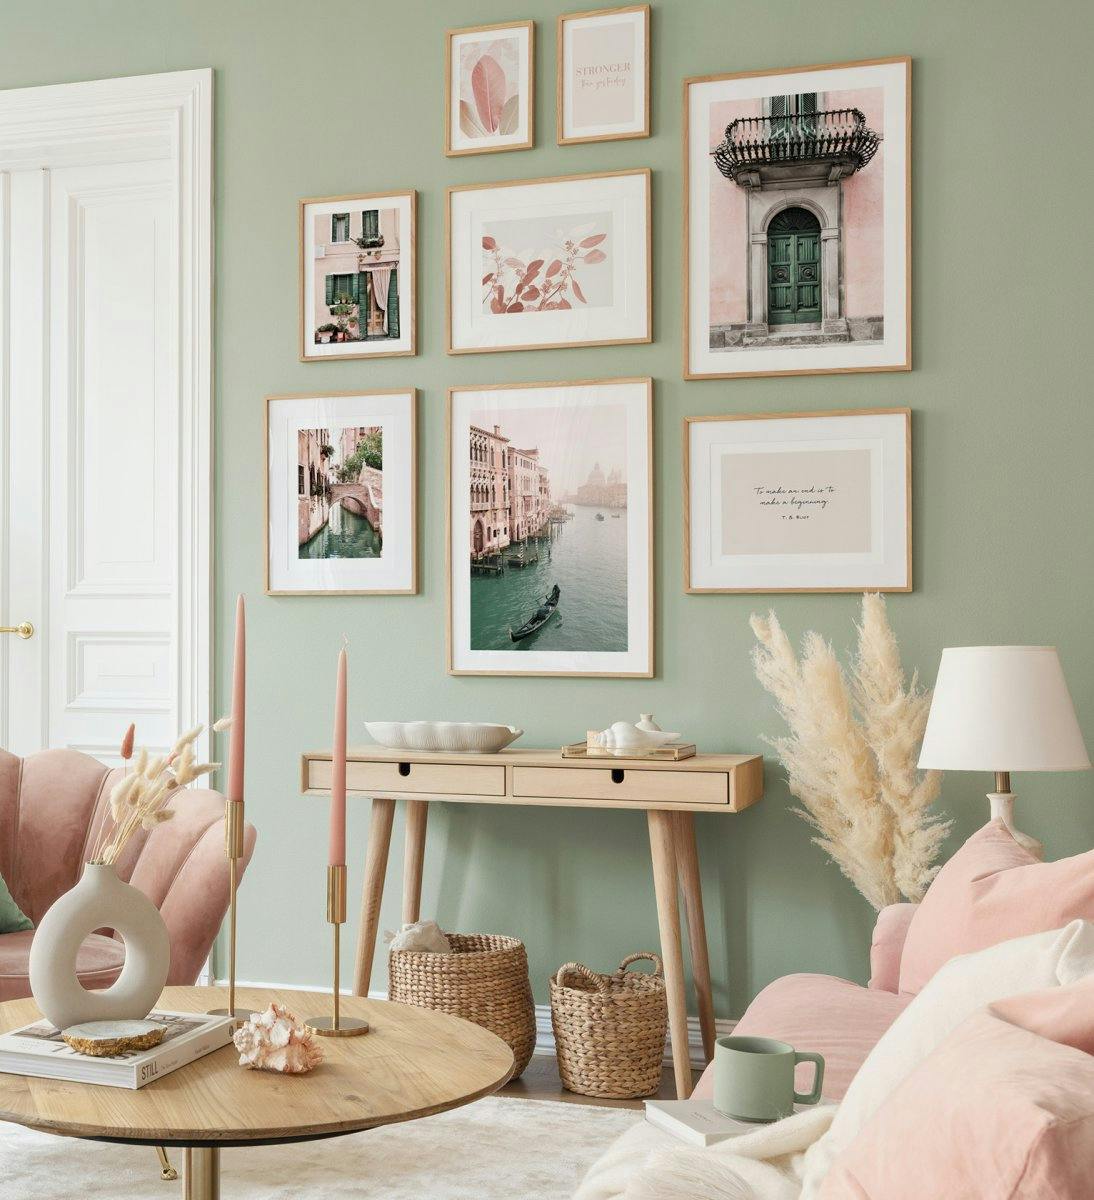 Fotografie w pastelowych kolorach stworzą przyjemną atmosferę w salonie